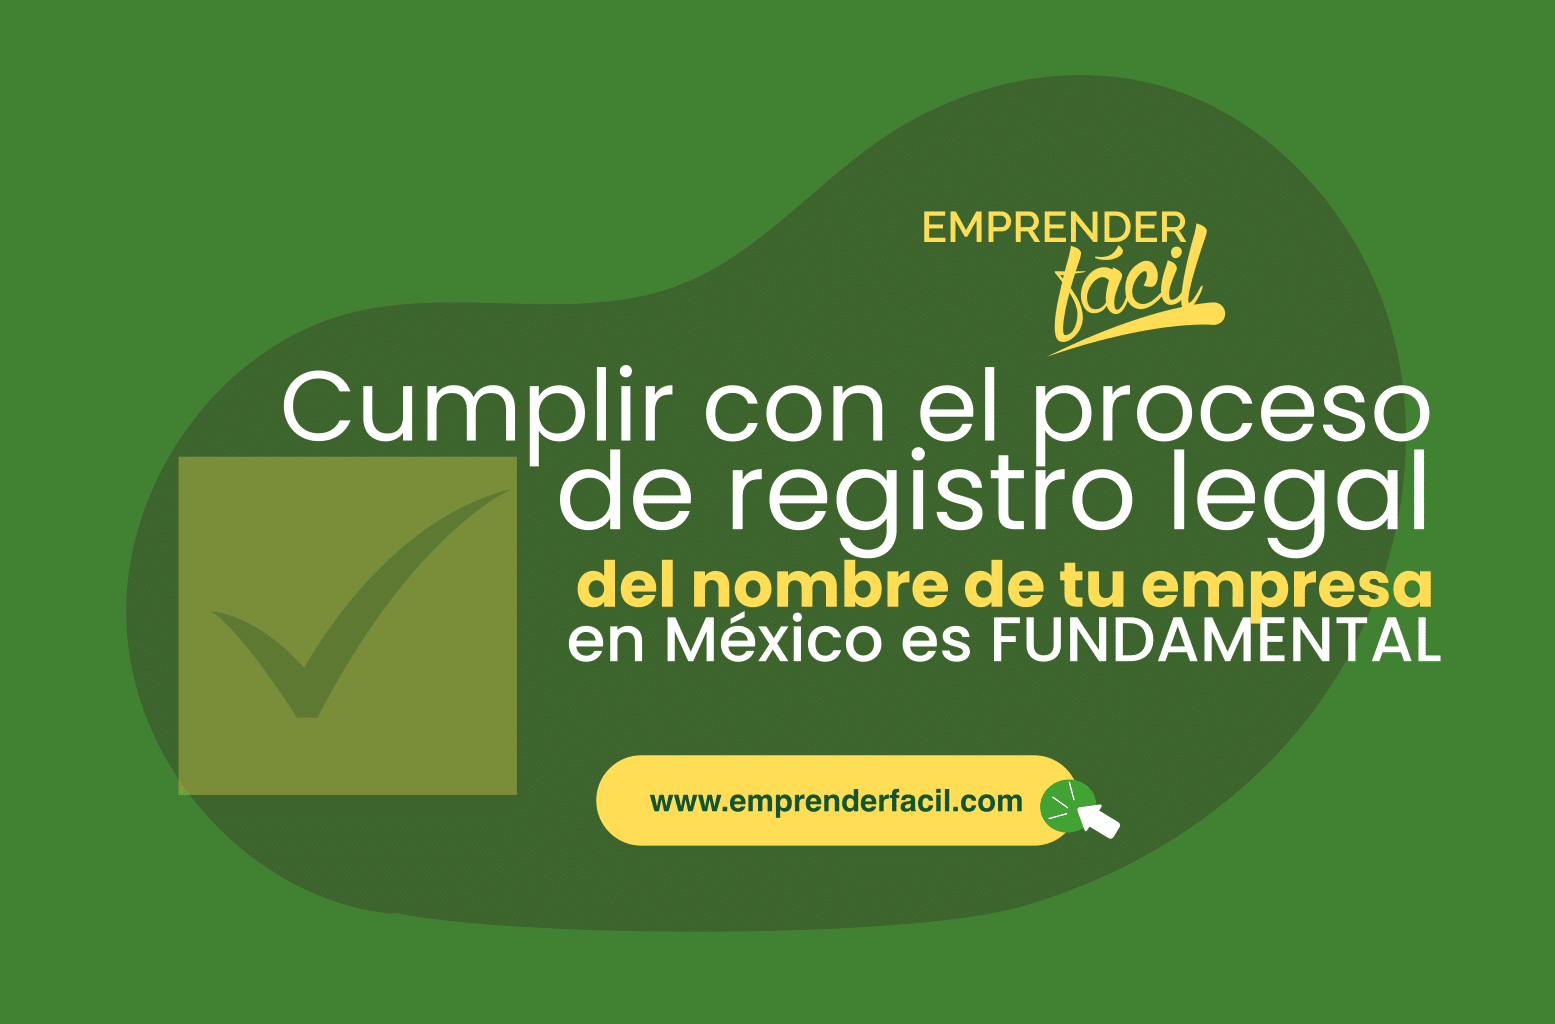 Cumplir con el proceso para registrar el nombre de una empresa en México.